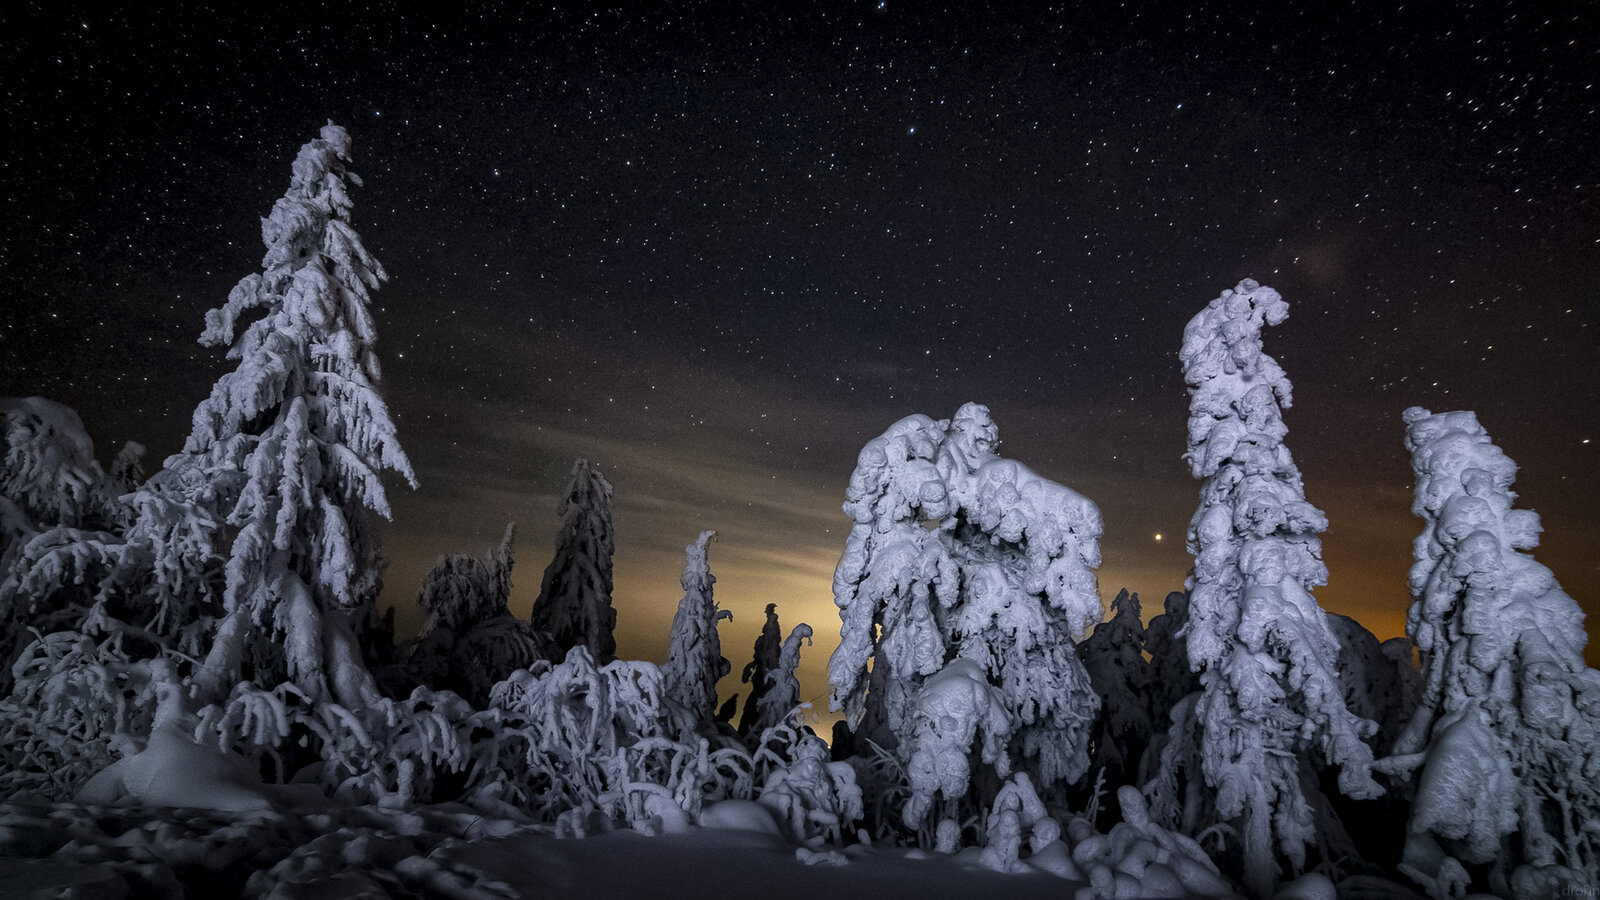 18_03_22 в 23ч28м фото Егор Драничников_-Звёздная ночь и мистические формы замороженных деревь...jpg